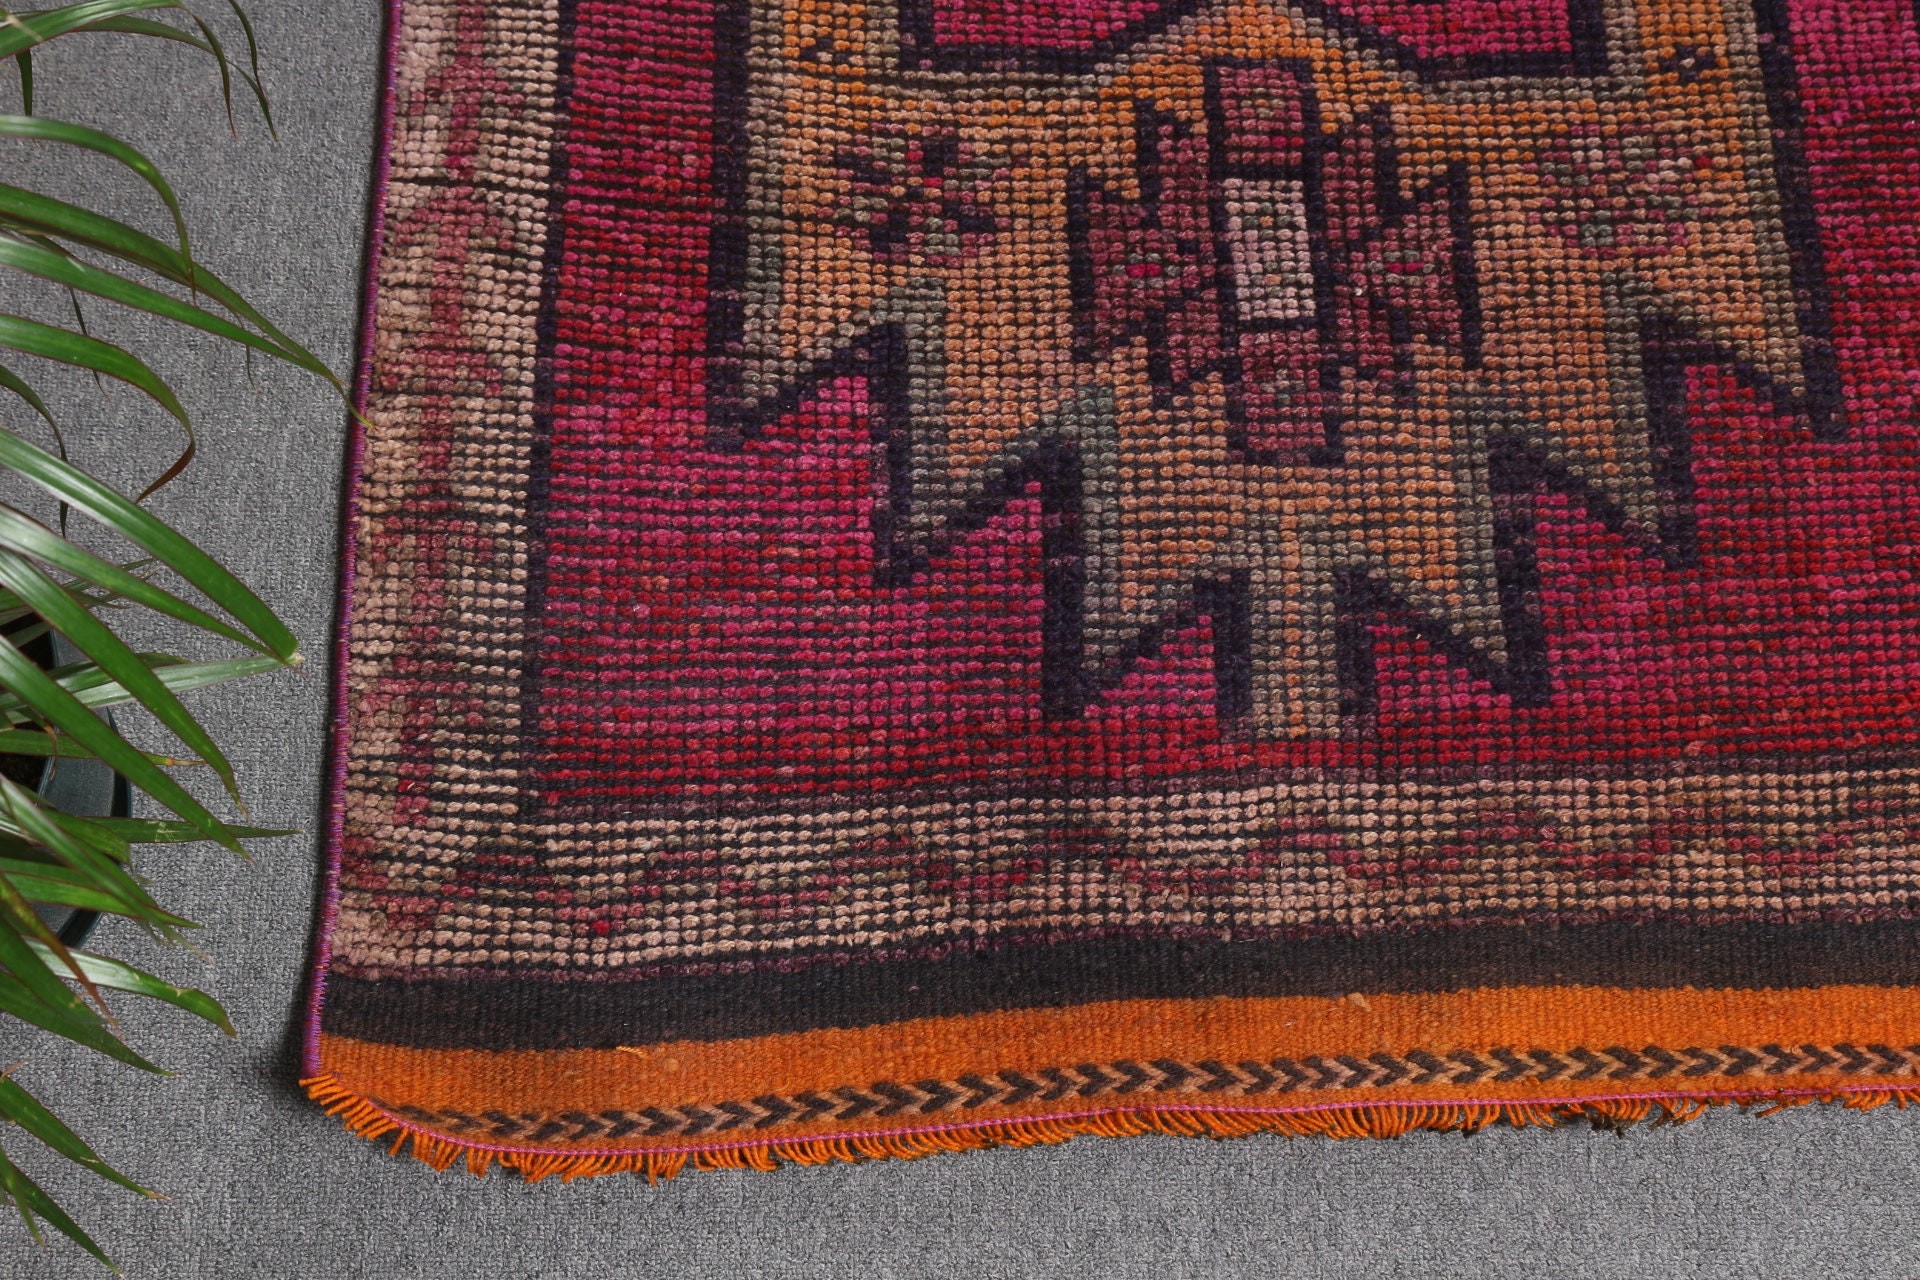 Antique Rug, Purple Wool Rug, Handmade Rug, Turkish Rug, Home Decor Rugs, Rugs for Hallway, Stair Rug, 3x10.5 ft Runner Rug, Vintage Rug